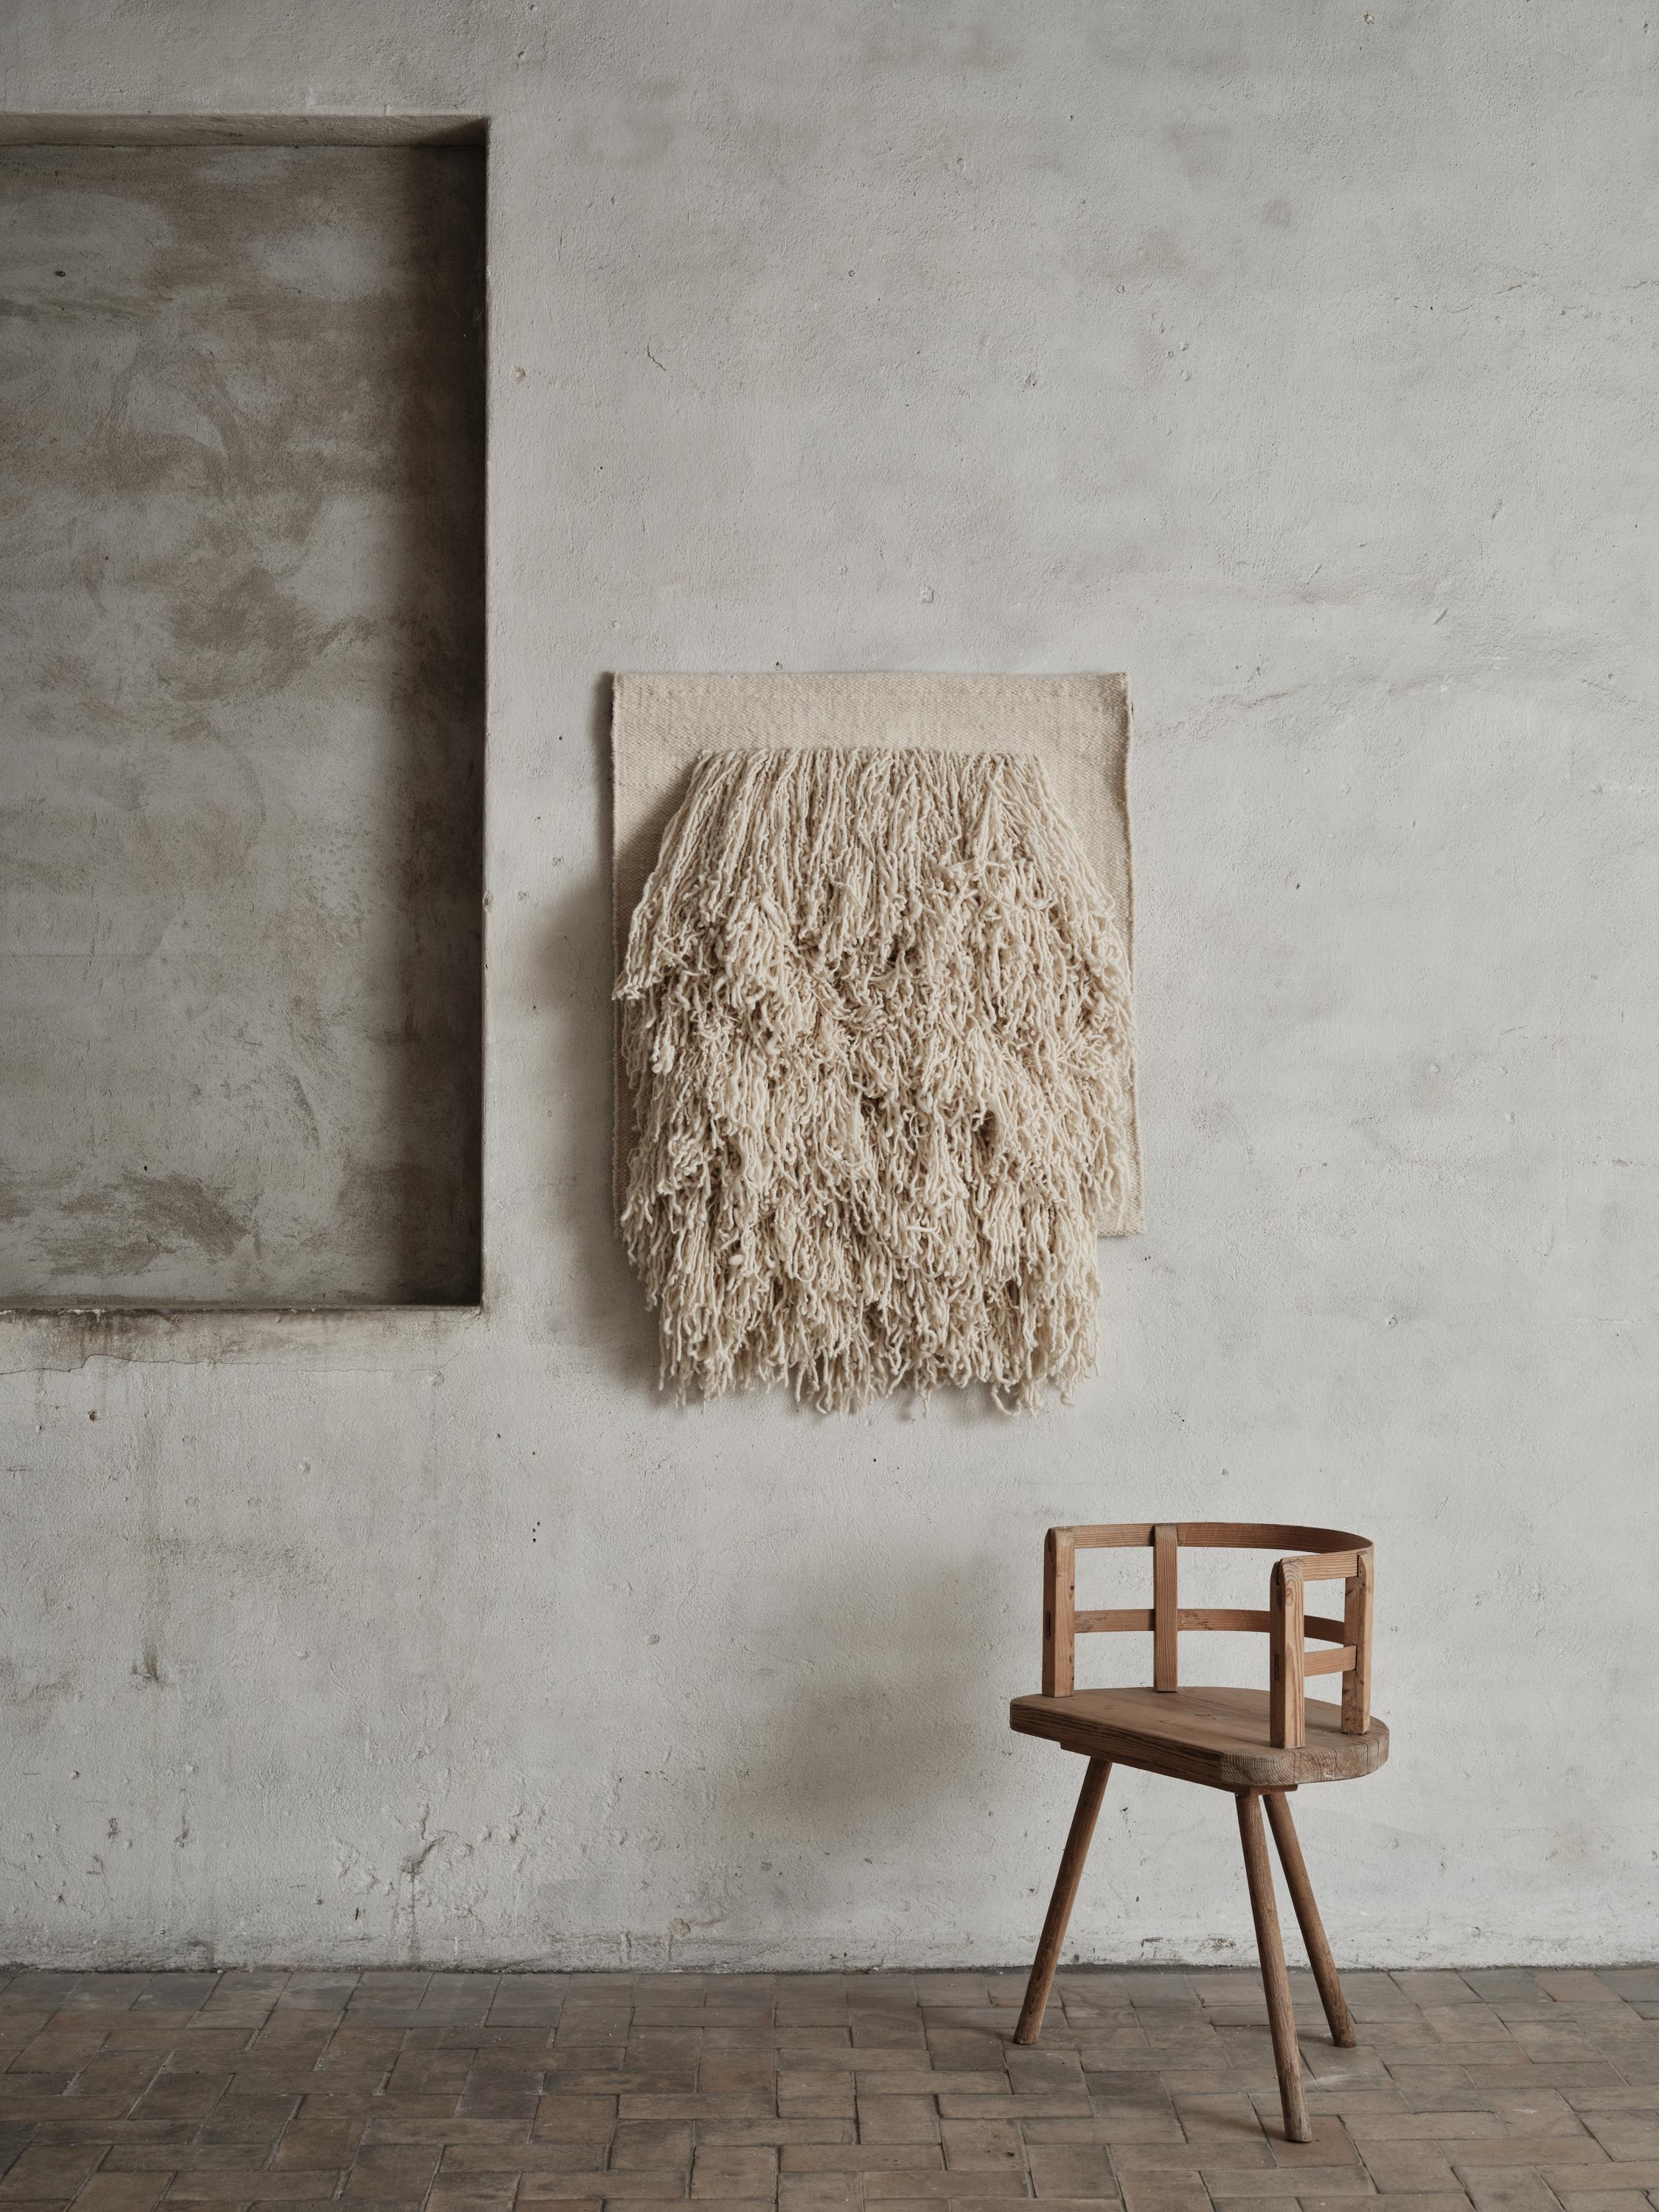 Wandteppich Nr.04 von Cappelen Dimyr
Abmessungen: T85 x H95 cm
MATERIALIEN: 85% Wolle 15% Baumwolle

Der Wandteppich Nr. 04 ist ein ausdrucksstarker Wandschmuck, der ein perfektes Gleichgewicht zwischen zart und kräftig schafft. Das lange,